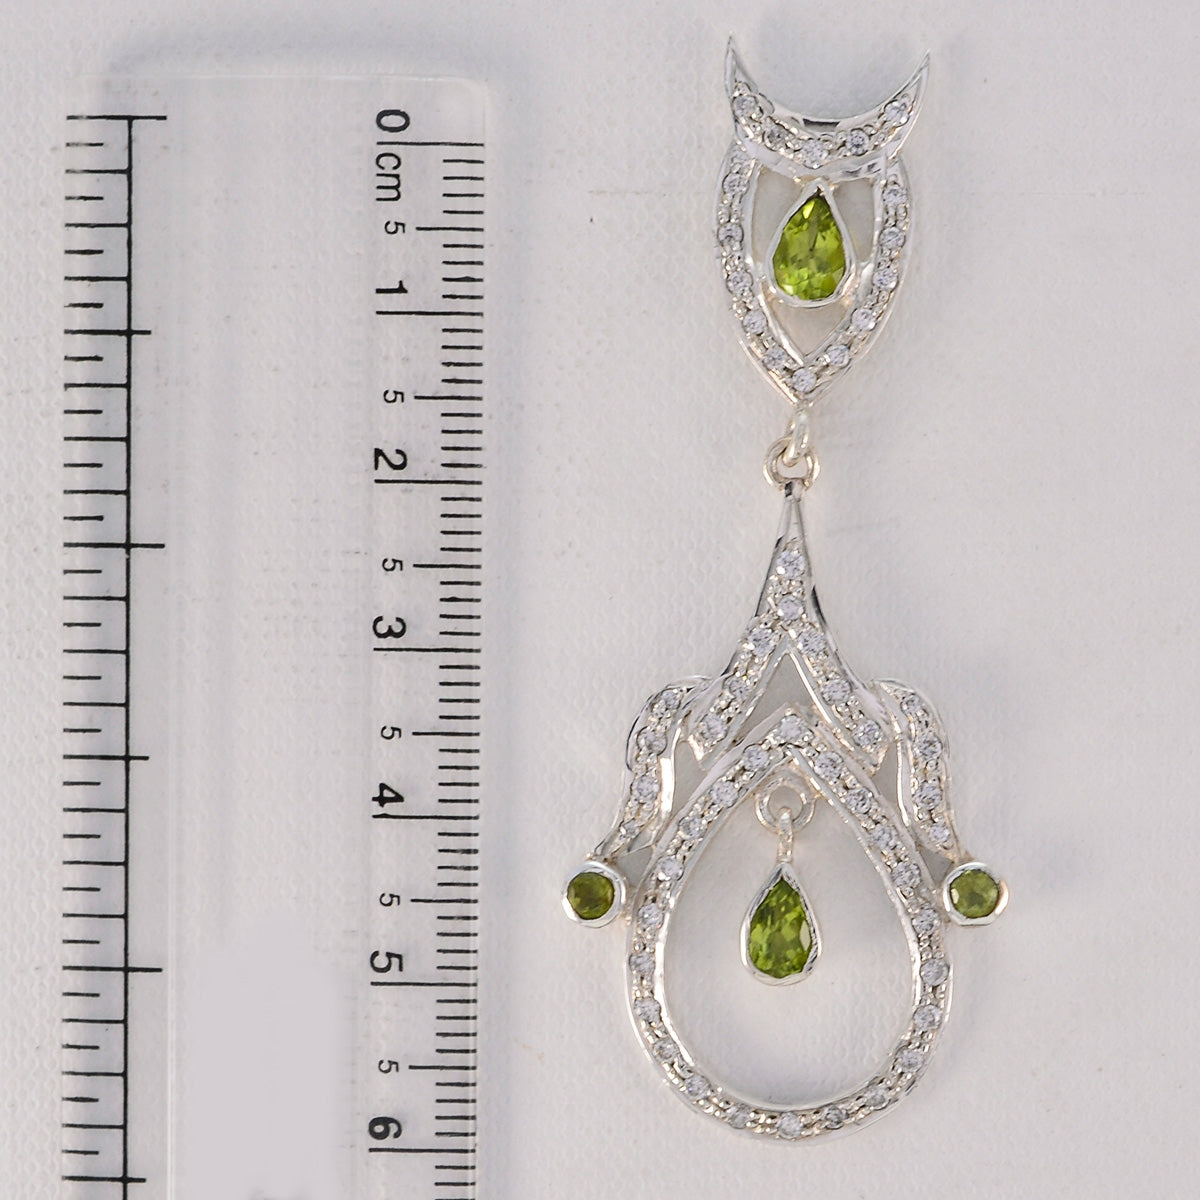 riyo foxy 925 sterling silver örhänge för syster peridot örhänge infattning grönt örhänge jhumka örhänge